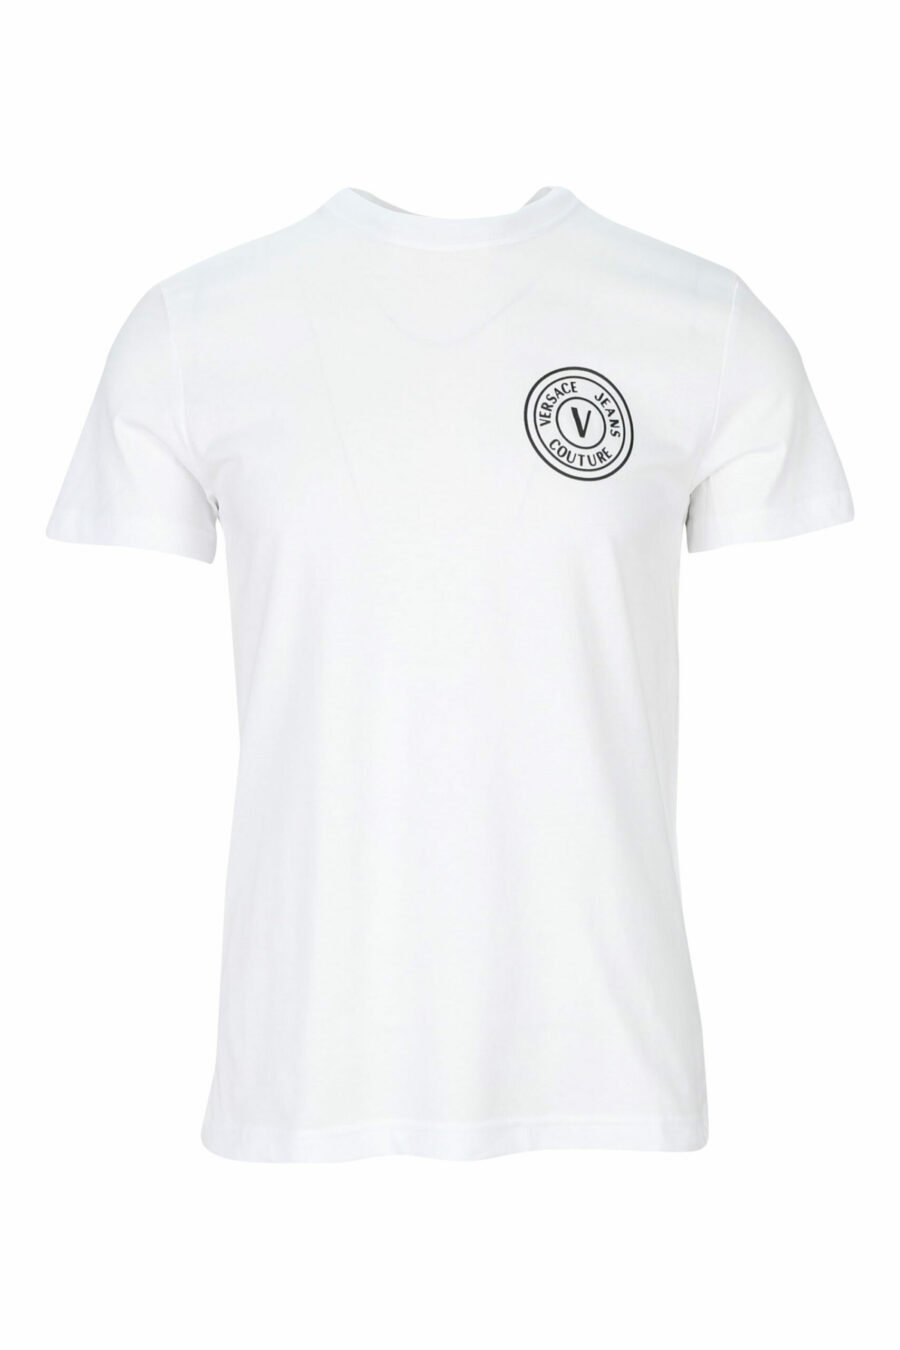 T-shirt branca com mini-logotipo circular preto - 8052019468526